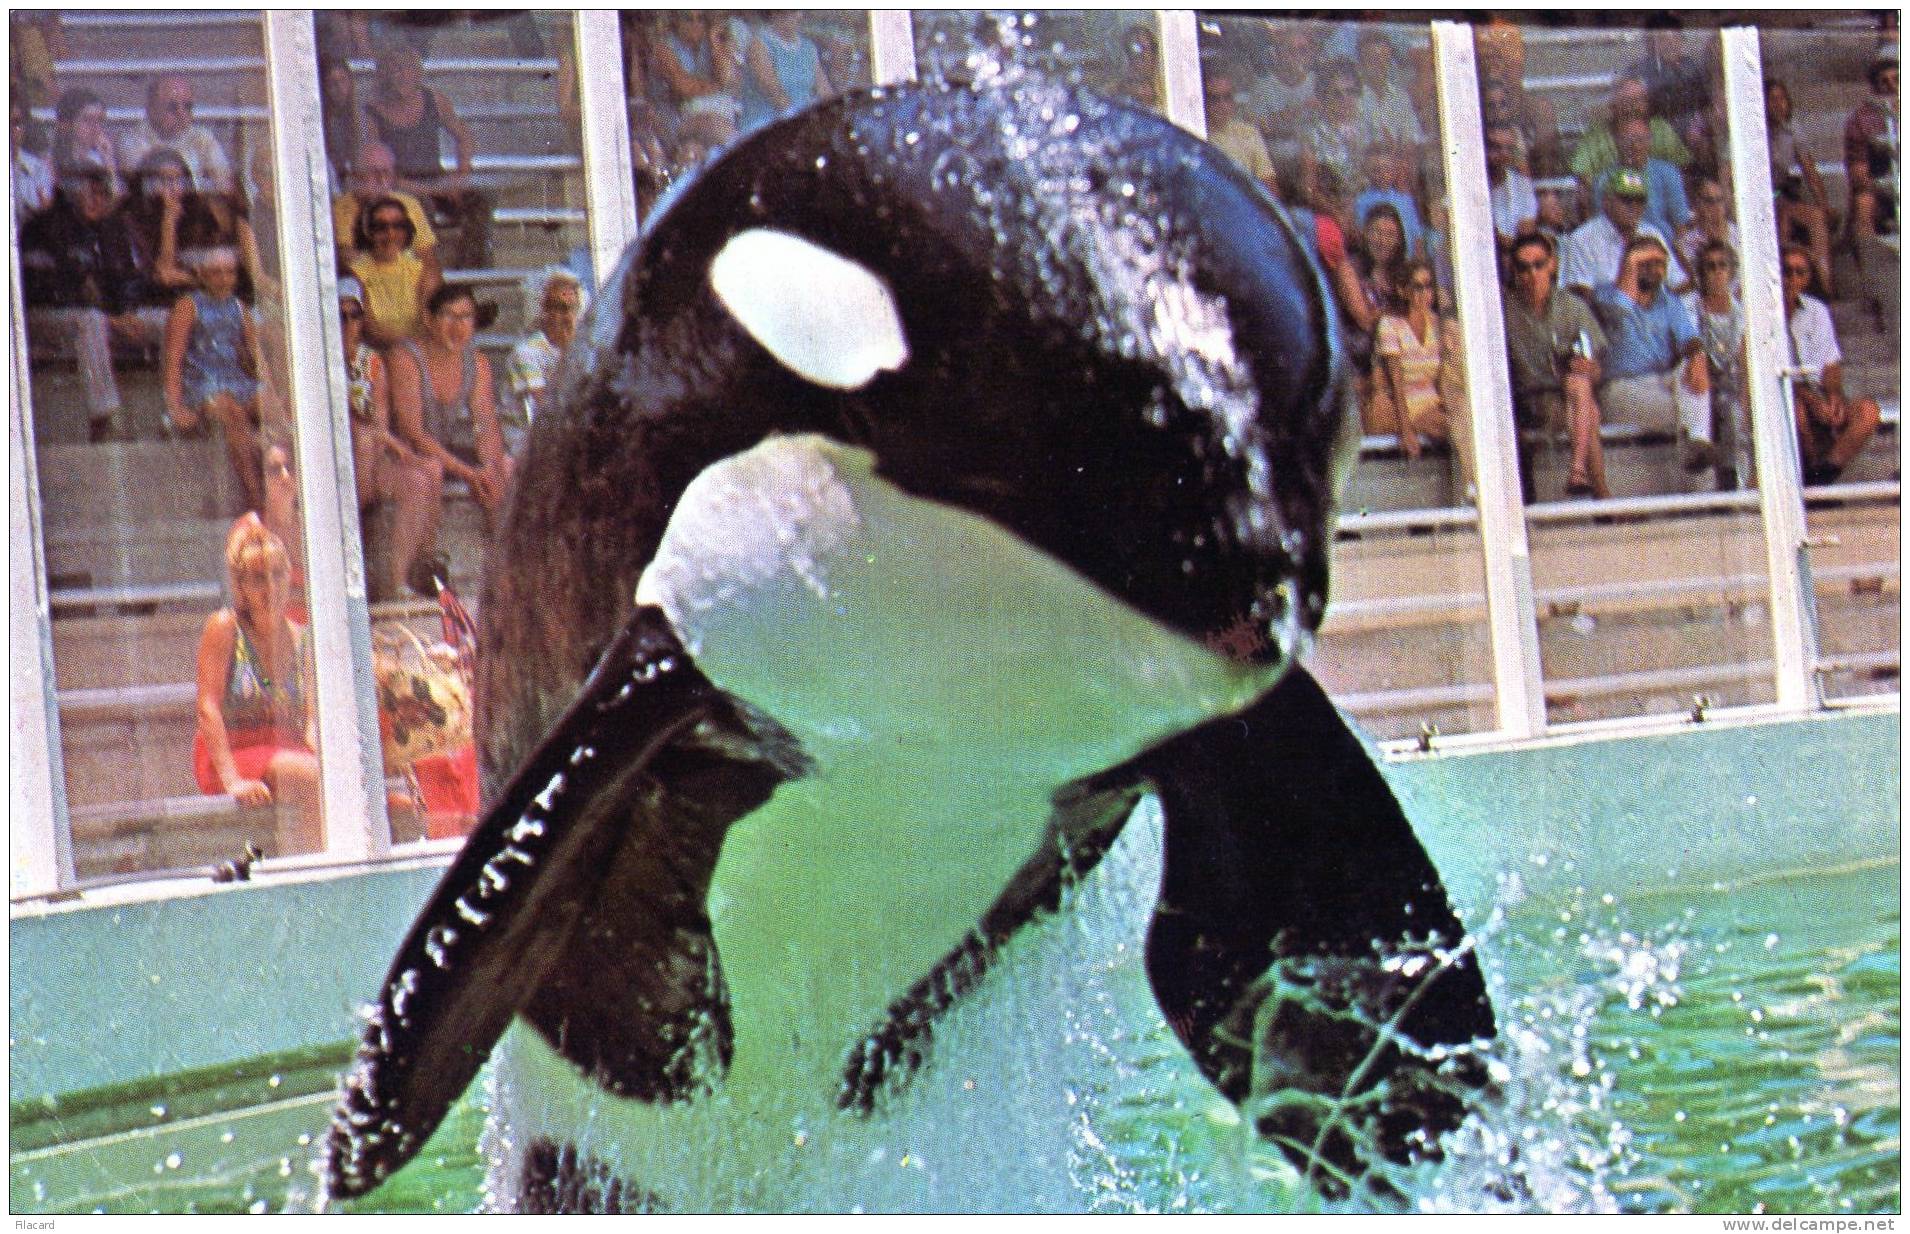 17833    Stati Uniti,     Florida,  Hugo  Takes  To The Air At  Miami"s Fabulous  Seaquarium,  VG  1977 - Miami